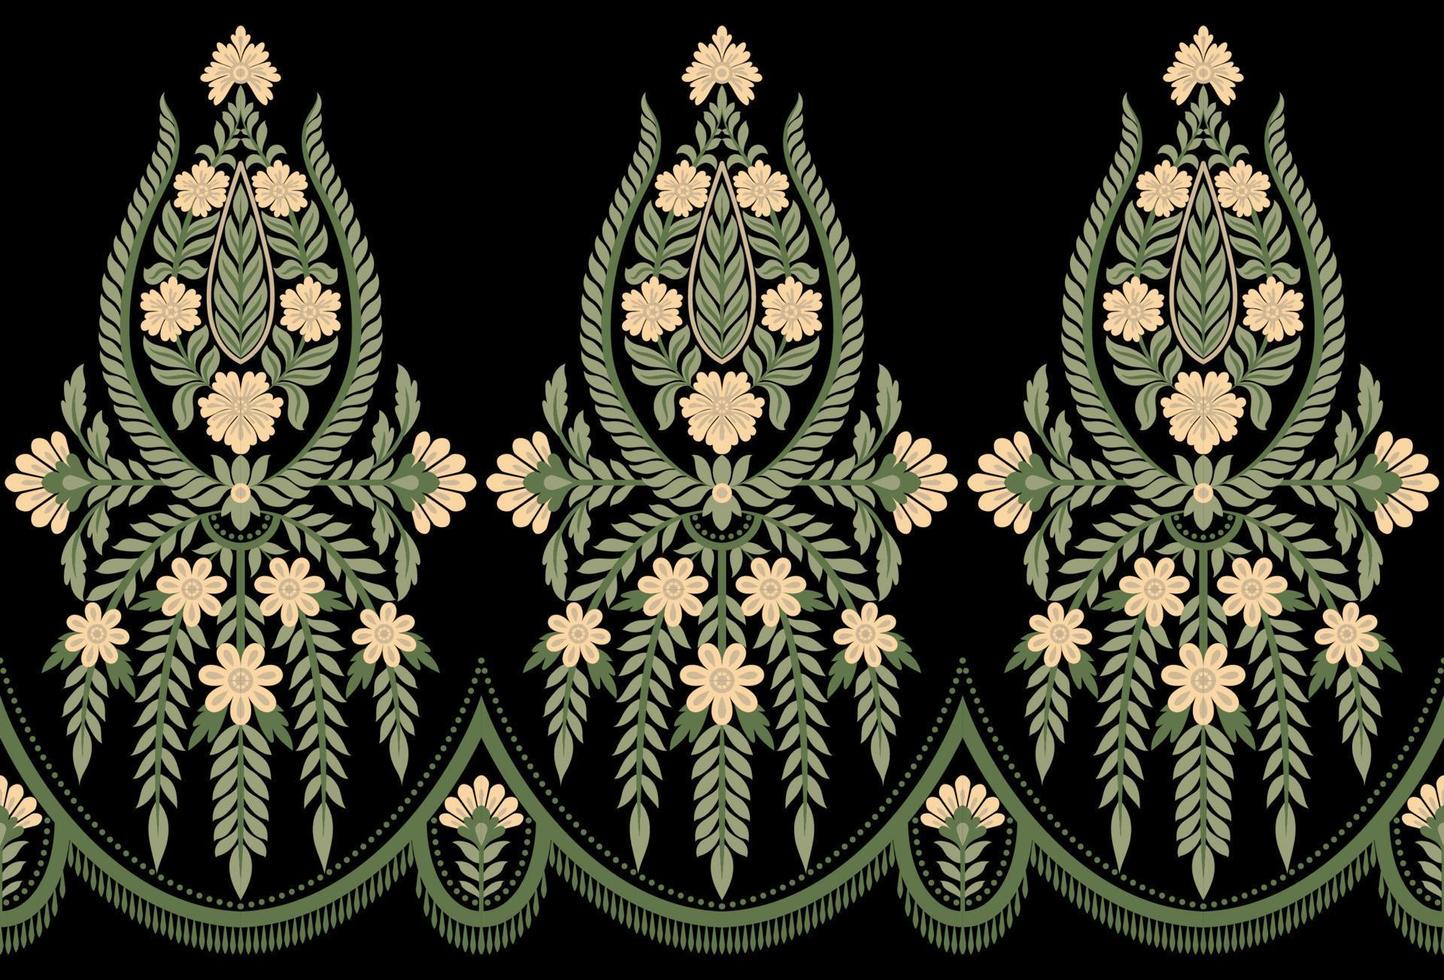 padrão de vetor sem emenda de Damasco. ornamento clássico de damasco vintage, padrão geométrico vitoriano real perfeito para papel de parede, têxtil, embalagem. padrão barroco floral, fundo verde